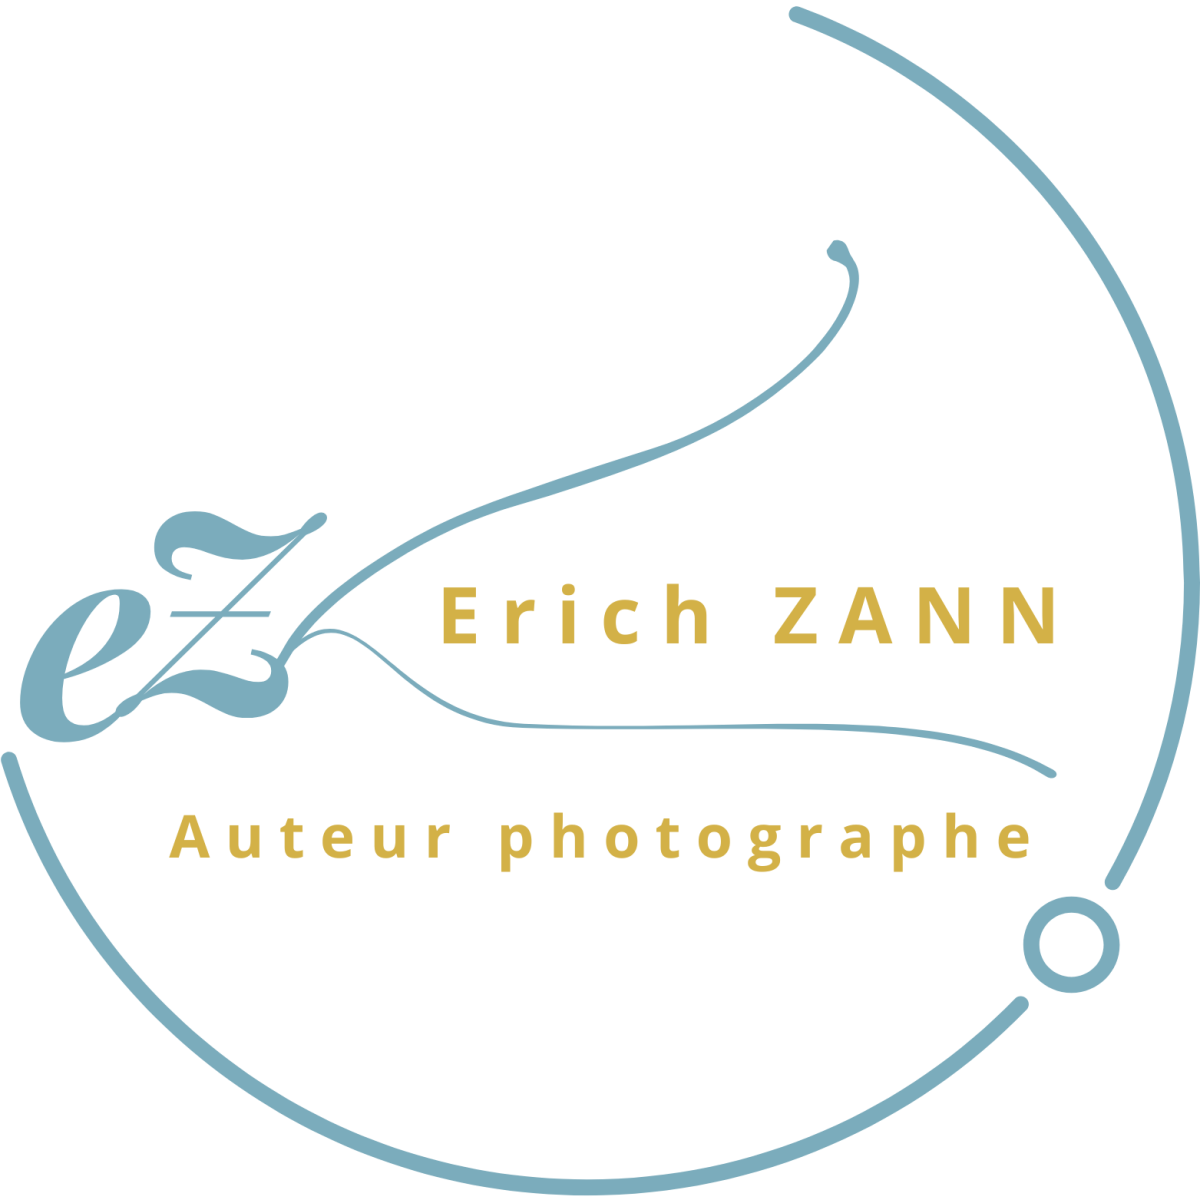 Erich ZANN auteur photographe Grenoble